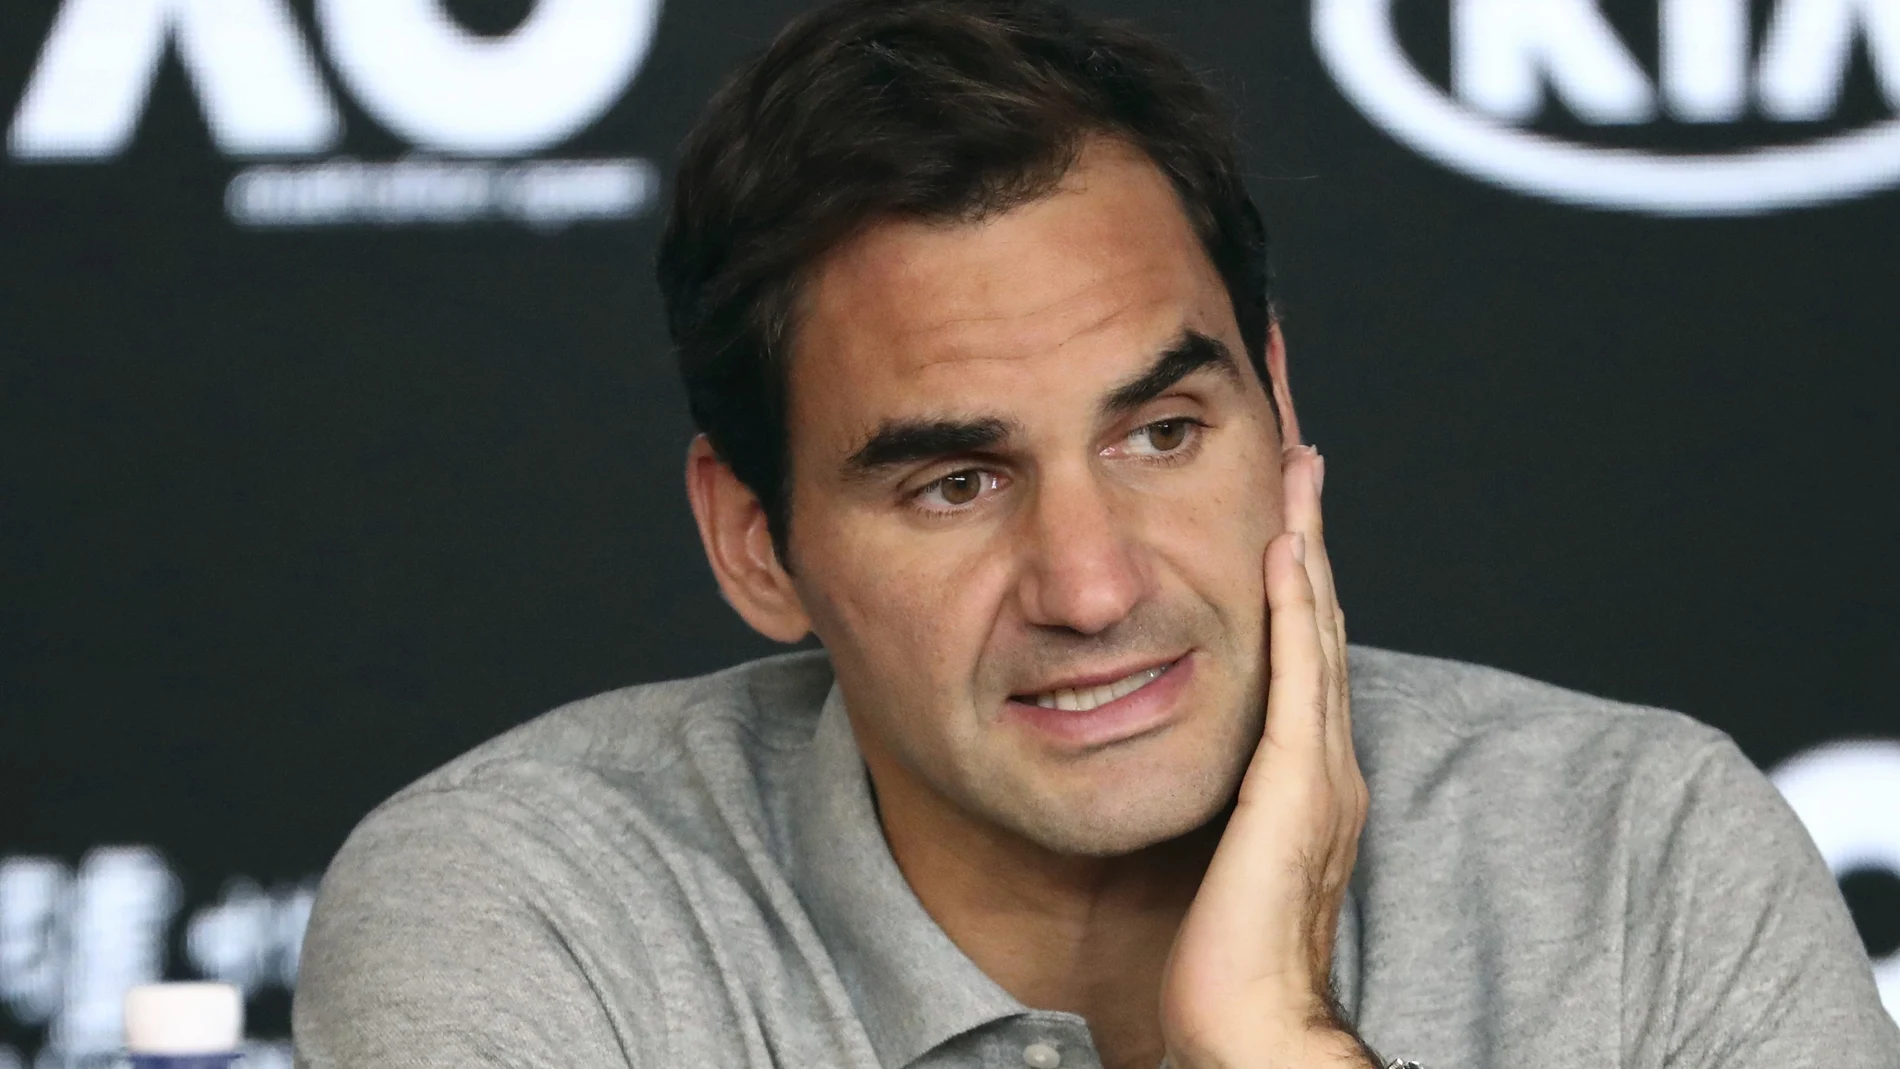 Imagen del tenista suizo Roger Federer durante una rueda de prensa